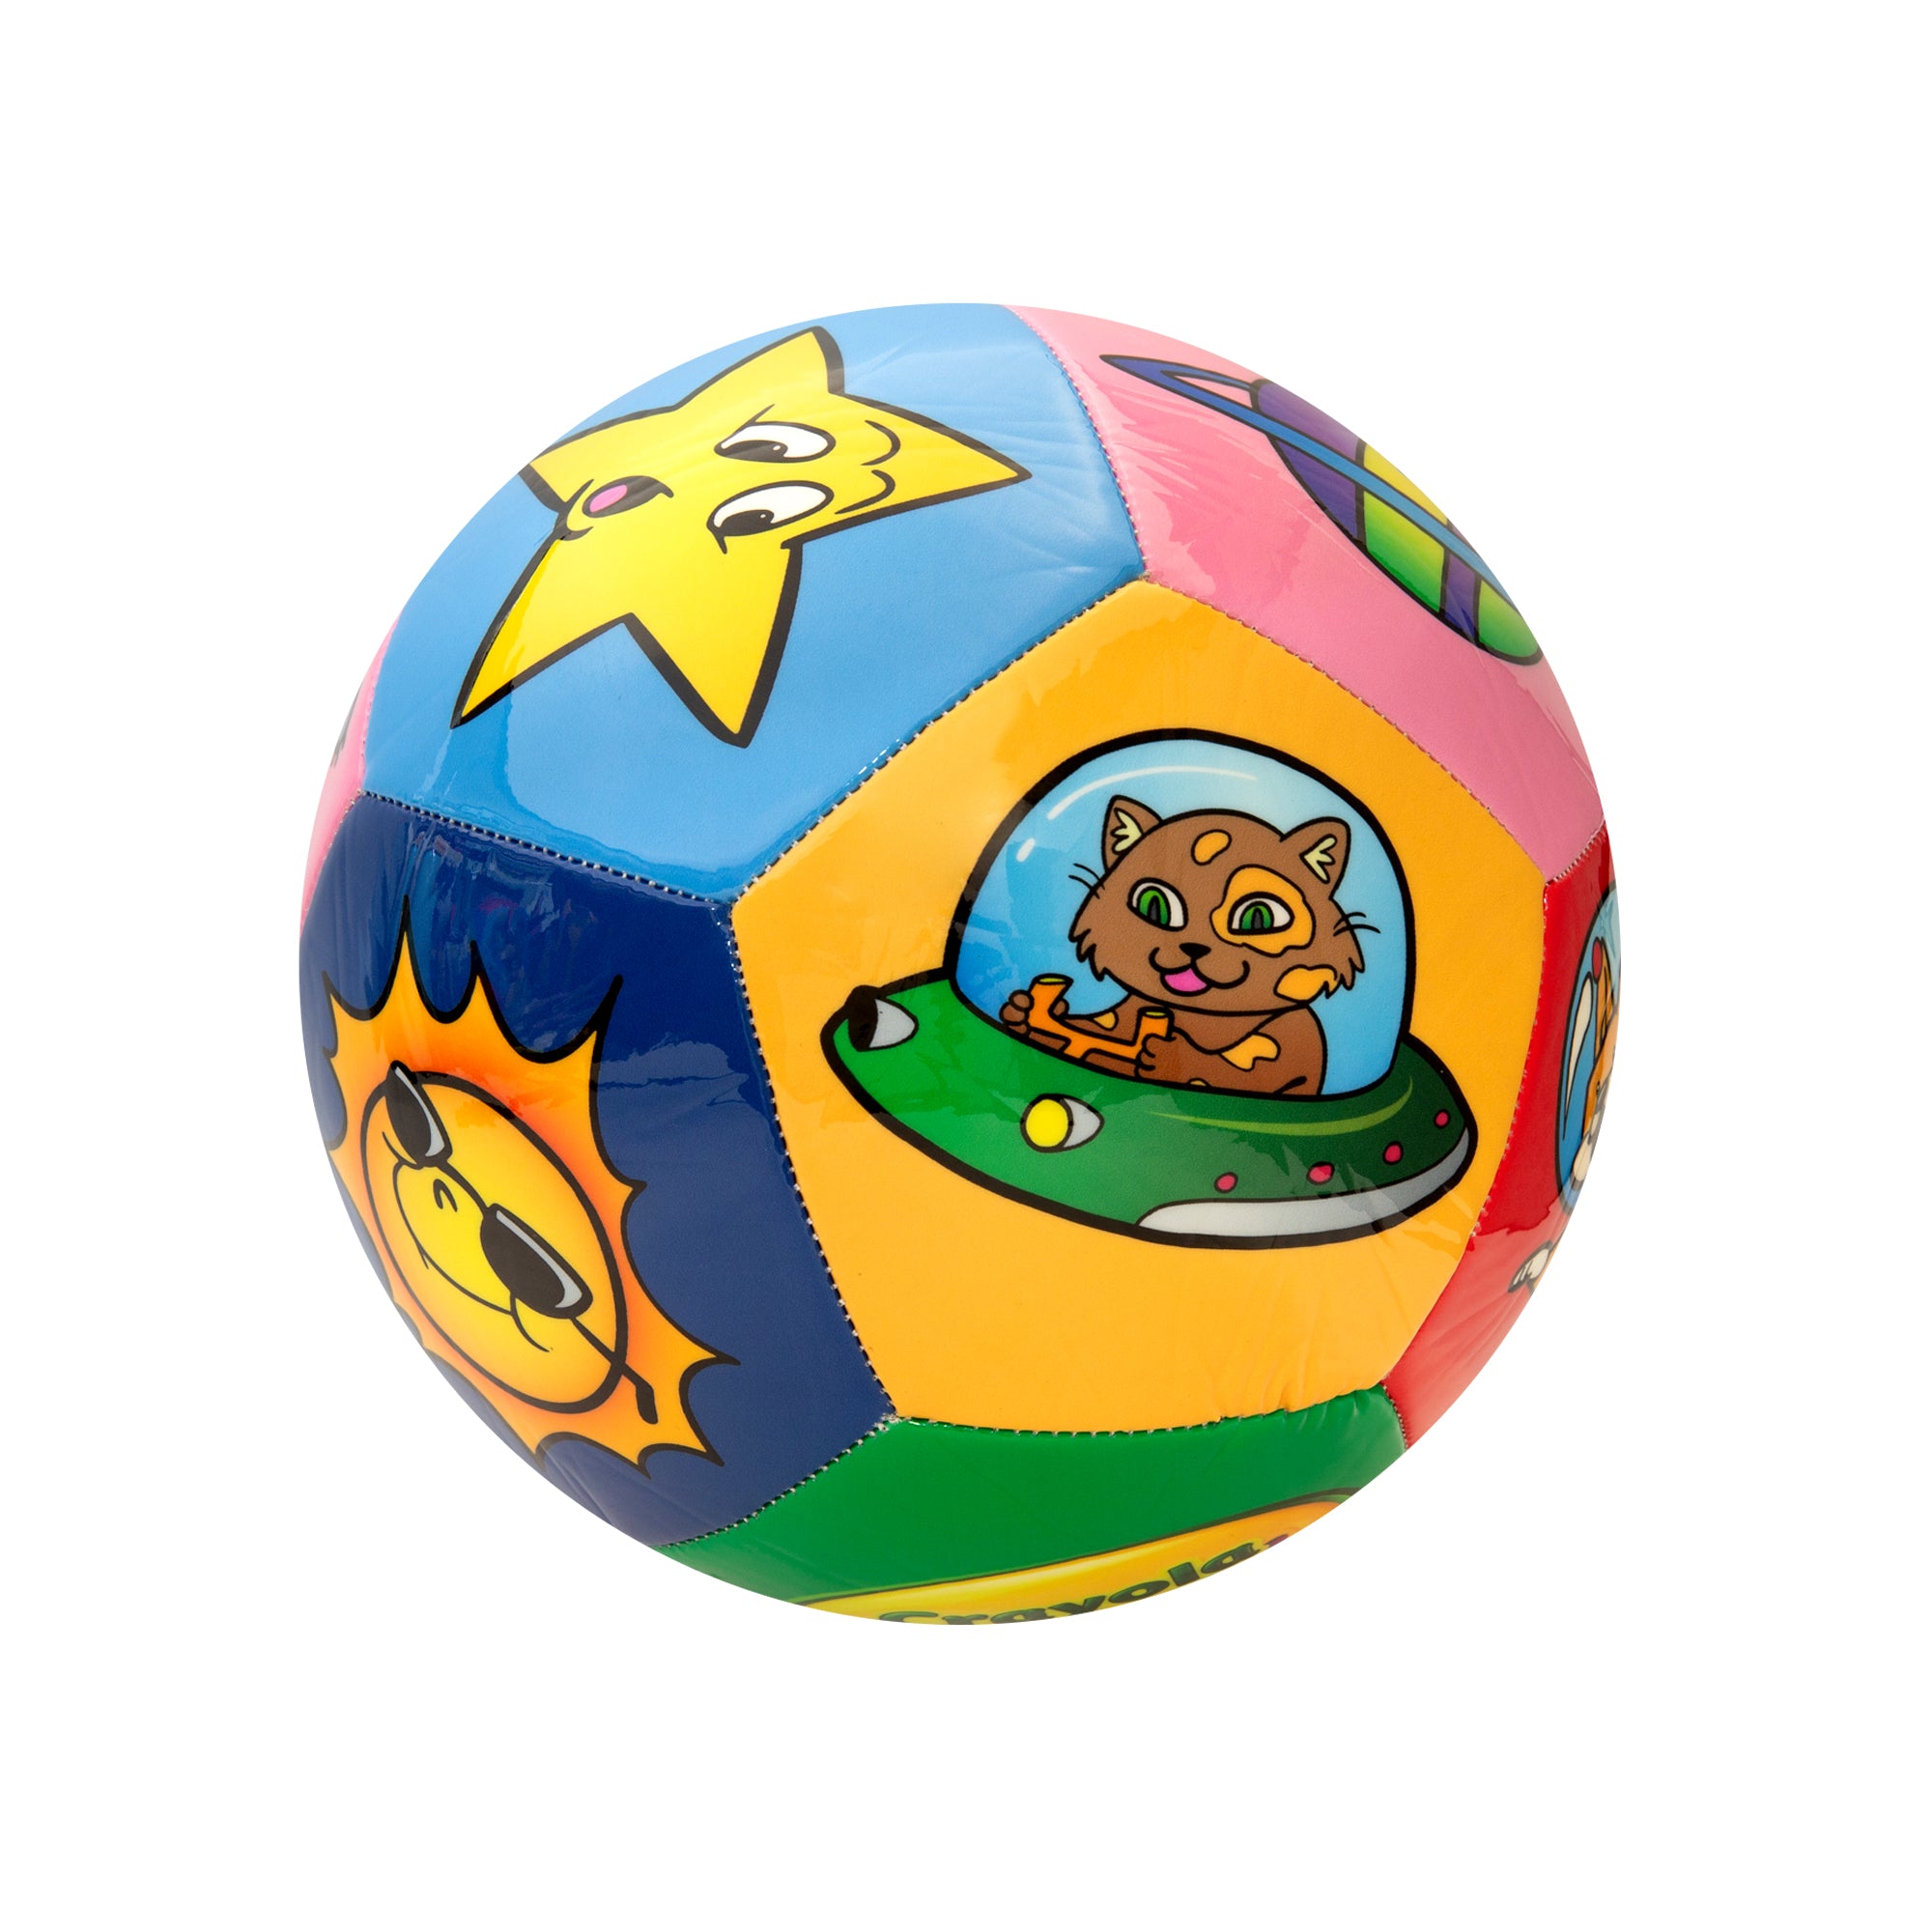 Crayola Space Explorer Soccer Ball